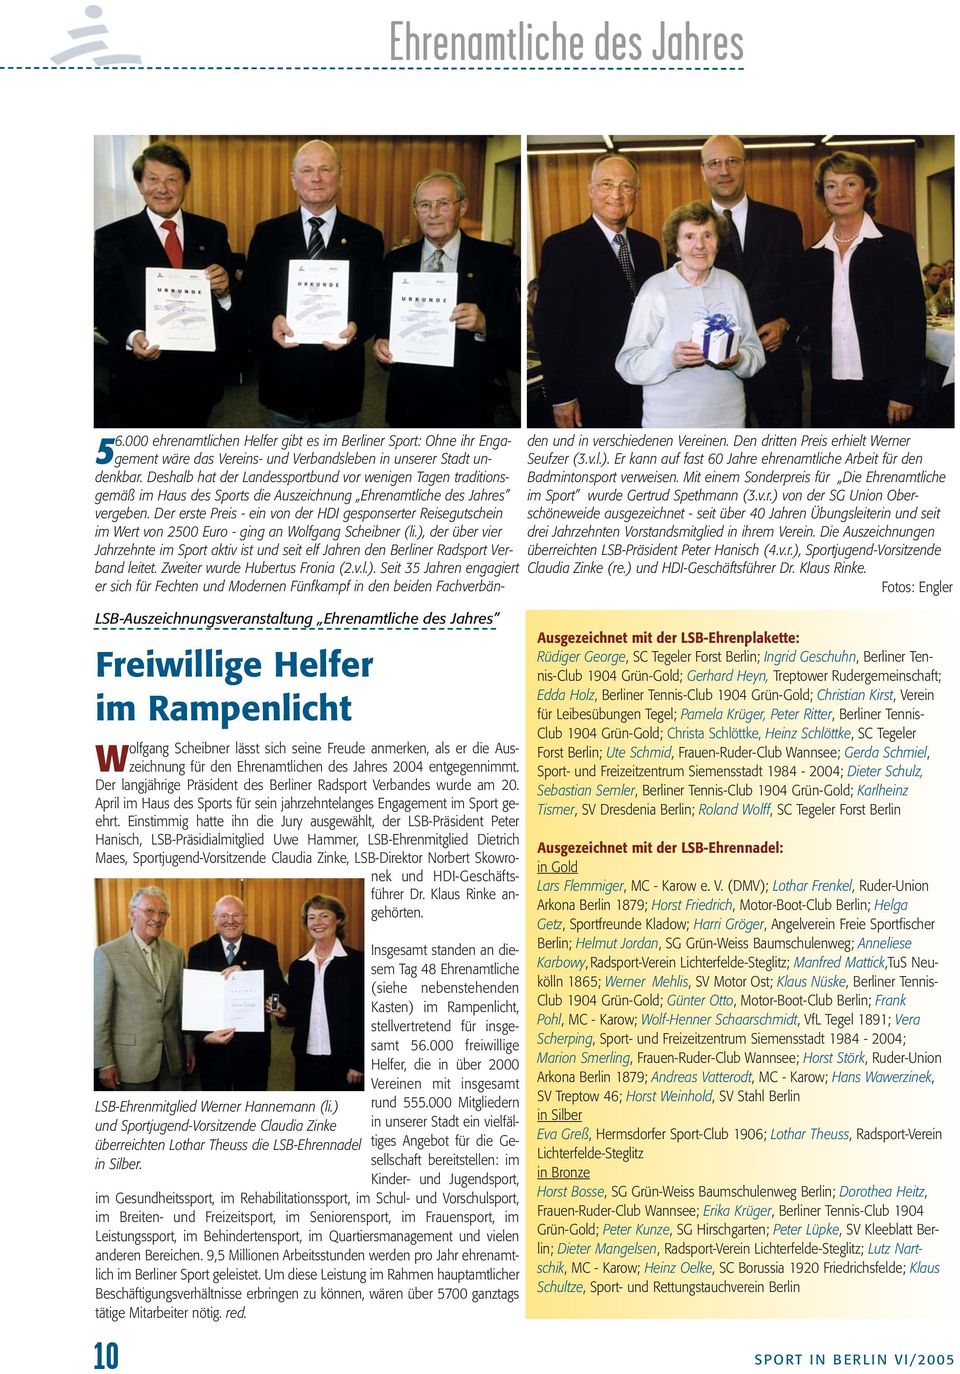 Der erste Preis - ein von der HDI gesponserter Reisegutschein im Wert von 2500 Euro - ging an Wolfgang Scheibner (li.